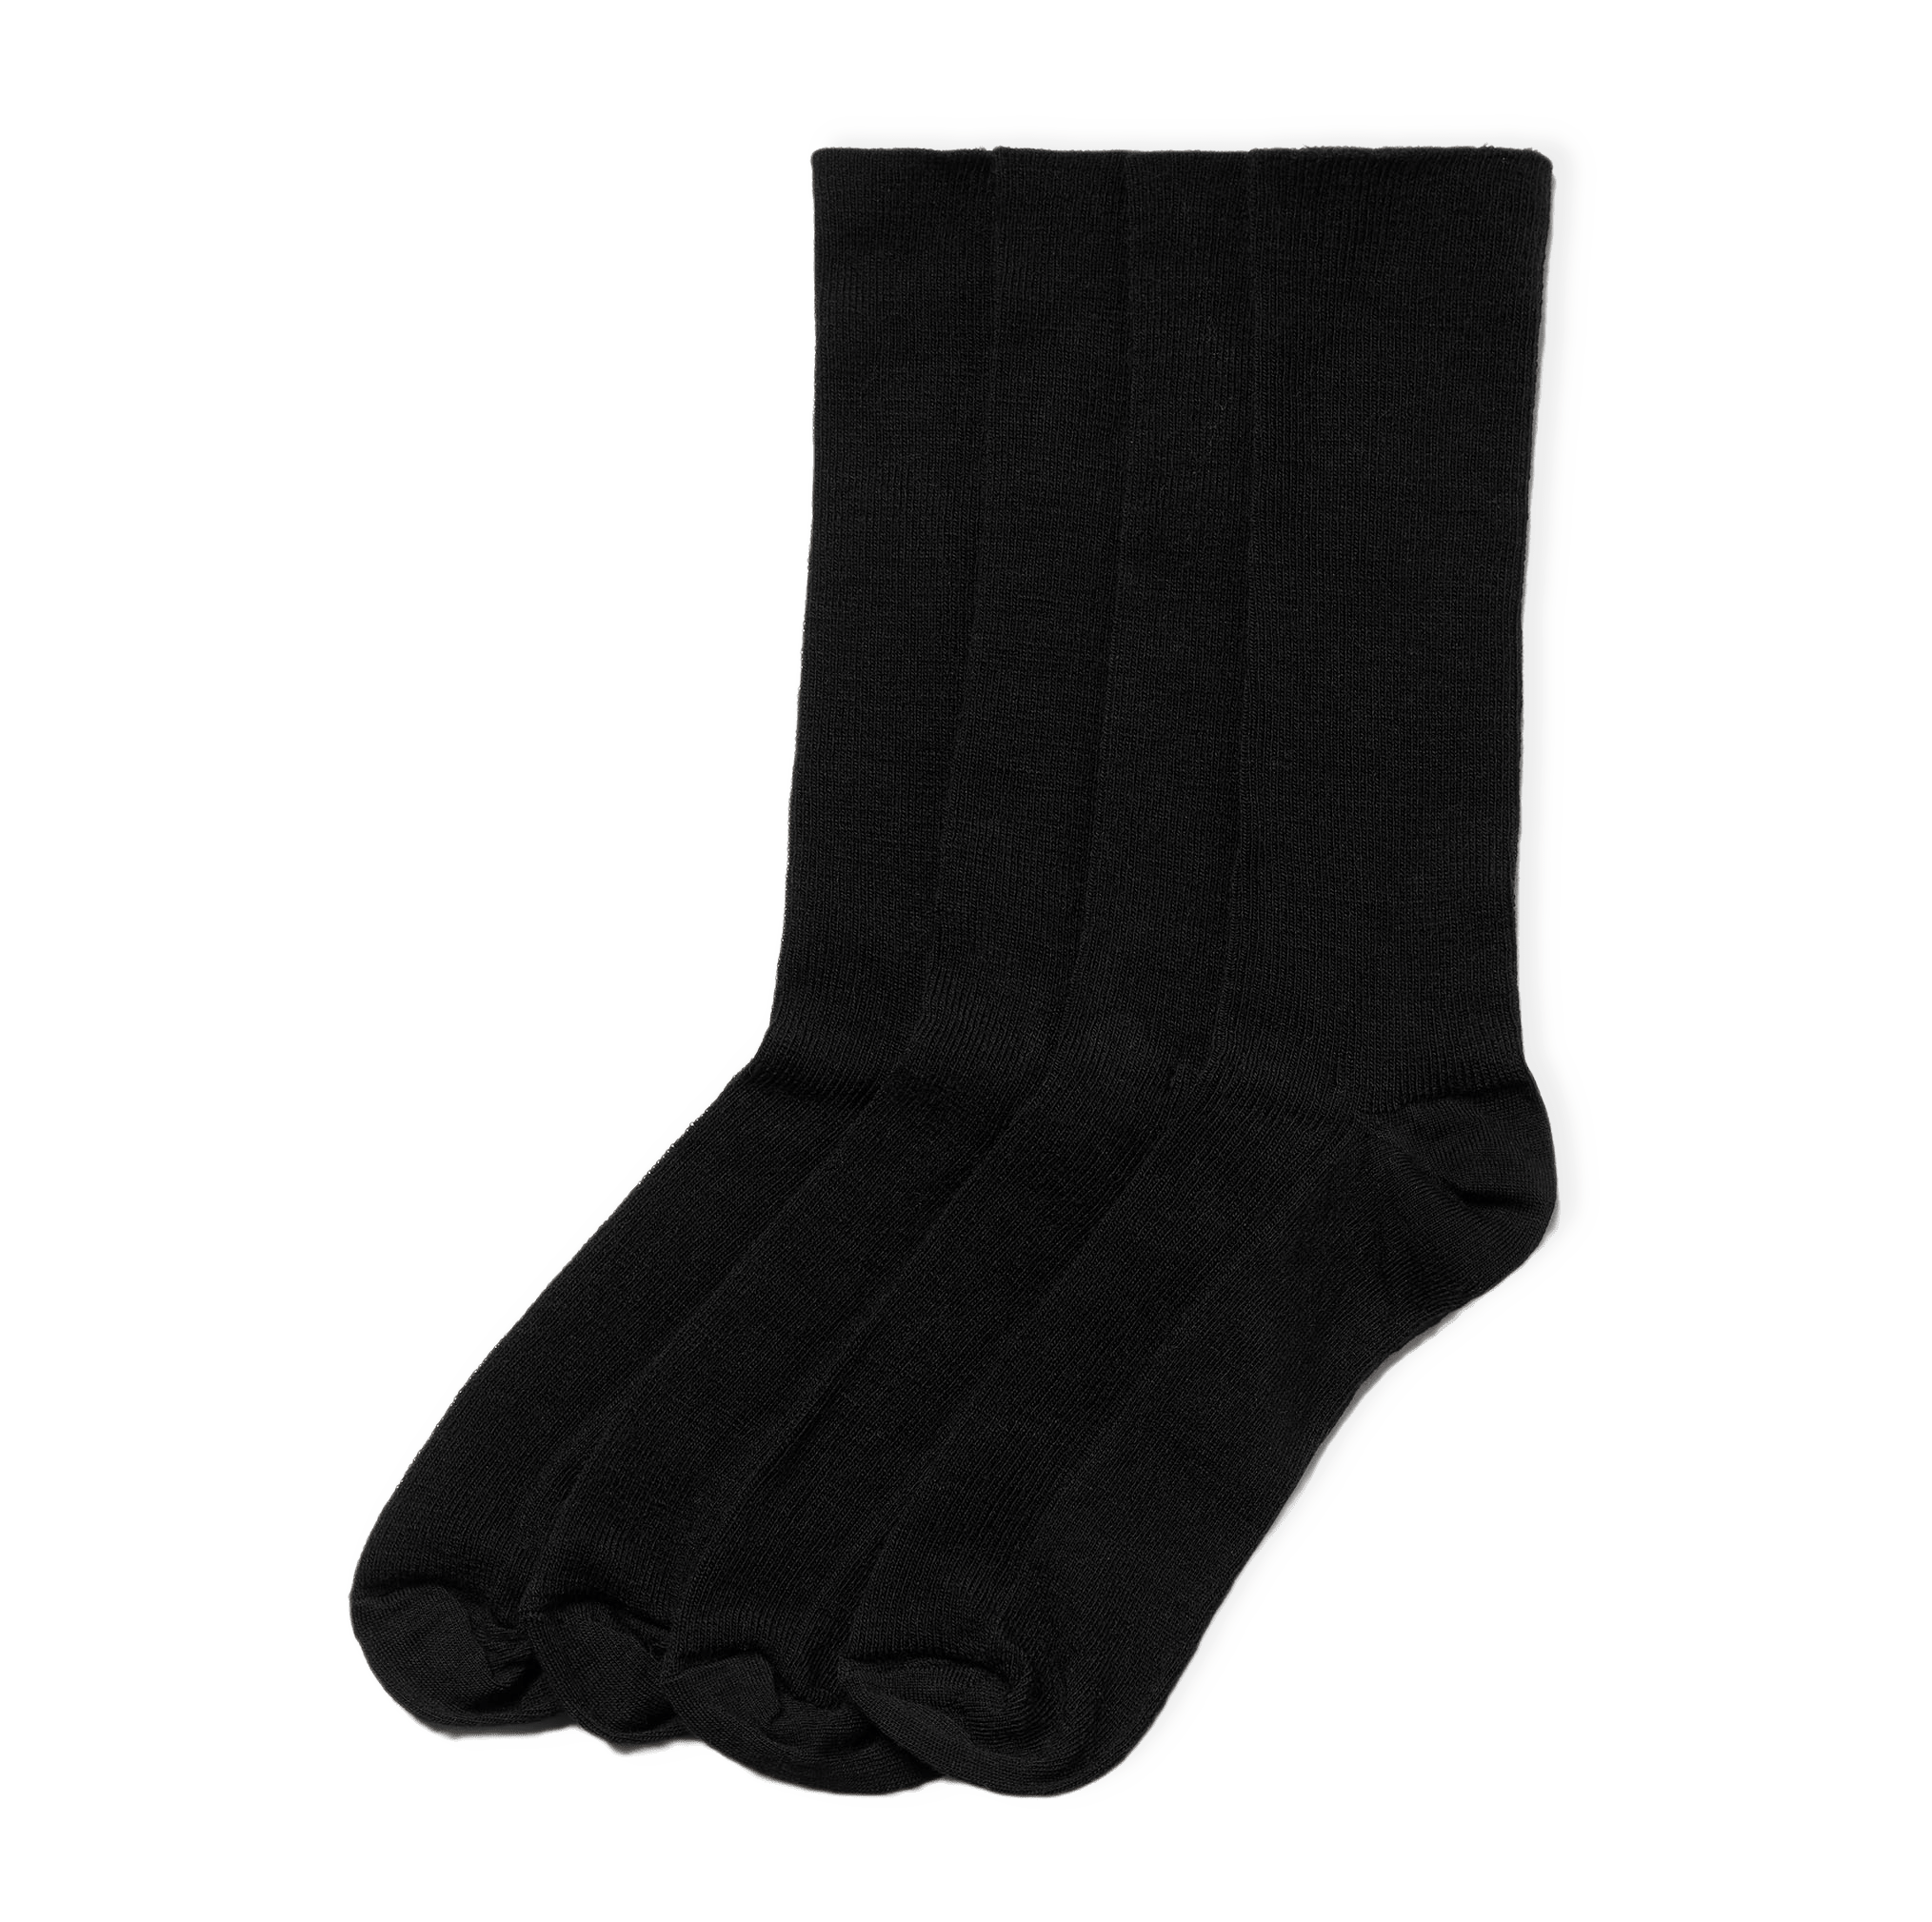 Socka i merinoullsmix 2-pack från Åhléns